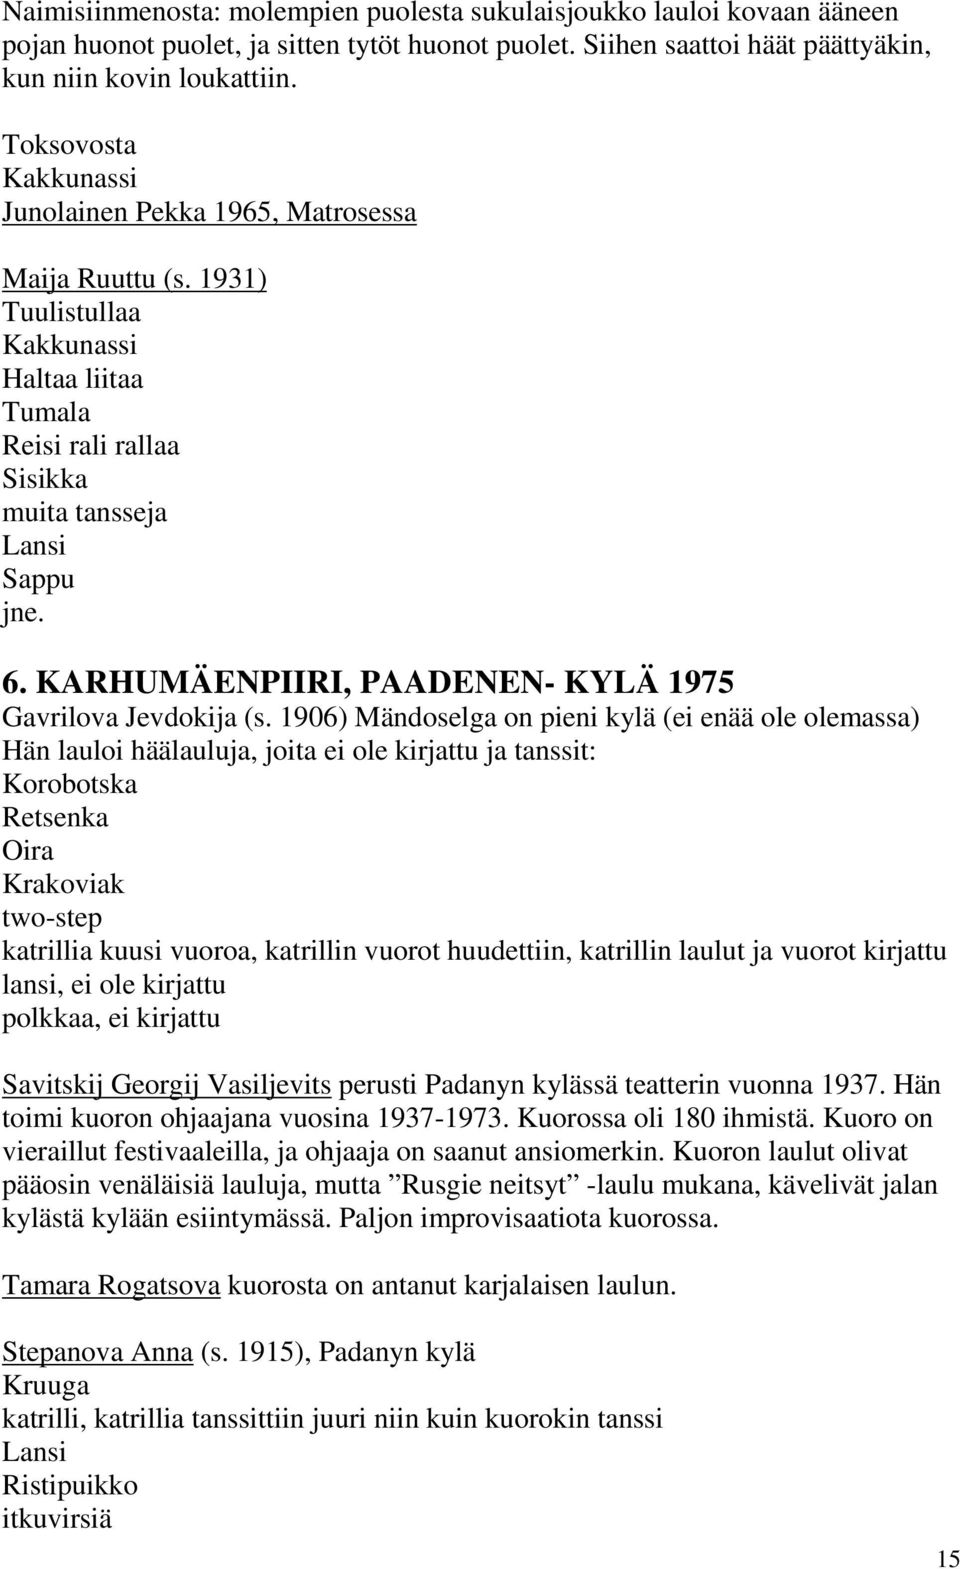 KARHUMÄENPIIRI, PAADENEN- KYLÄ 1975 Gavrilova Jevdokija (s.